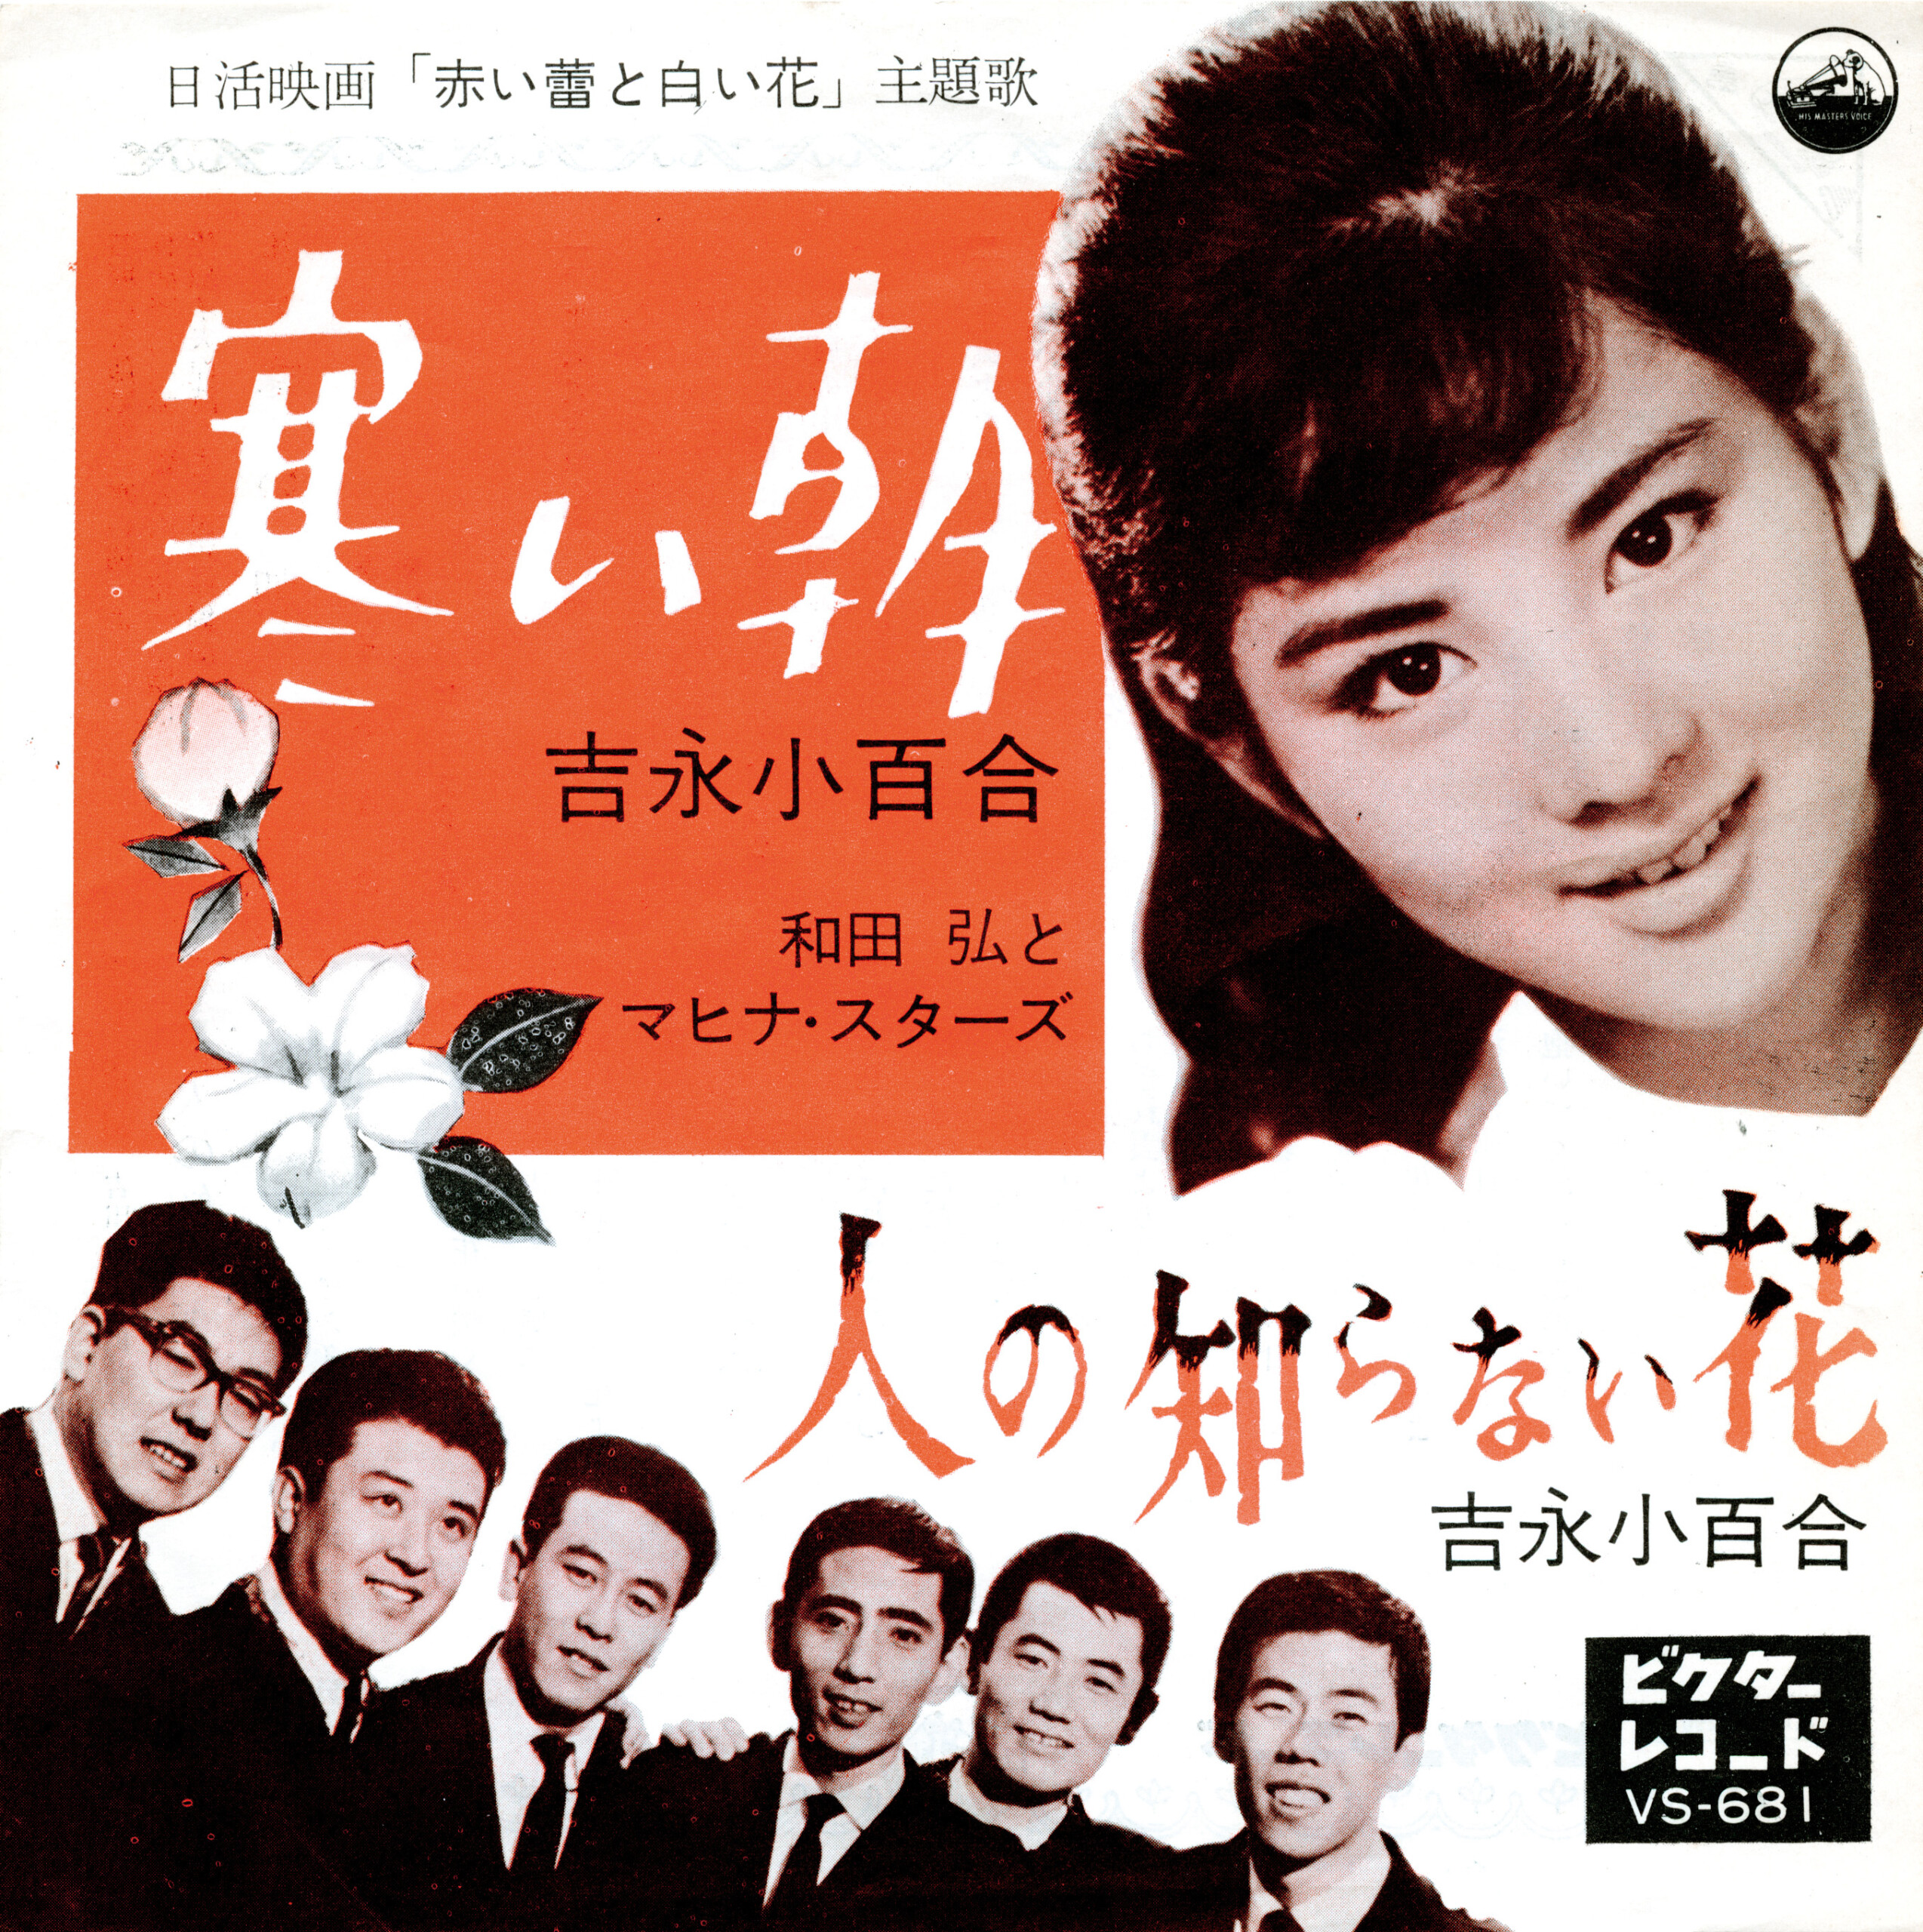 吉永小百合が「歌手デビュー60周年記念BOX」を自身の誕生日である3月13 